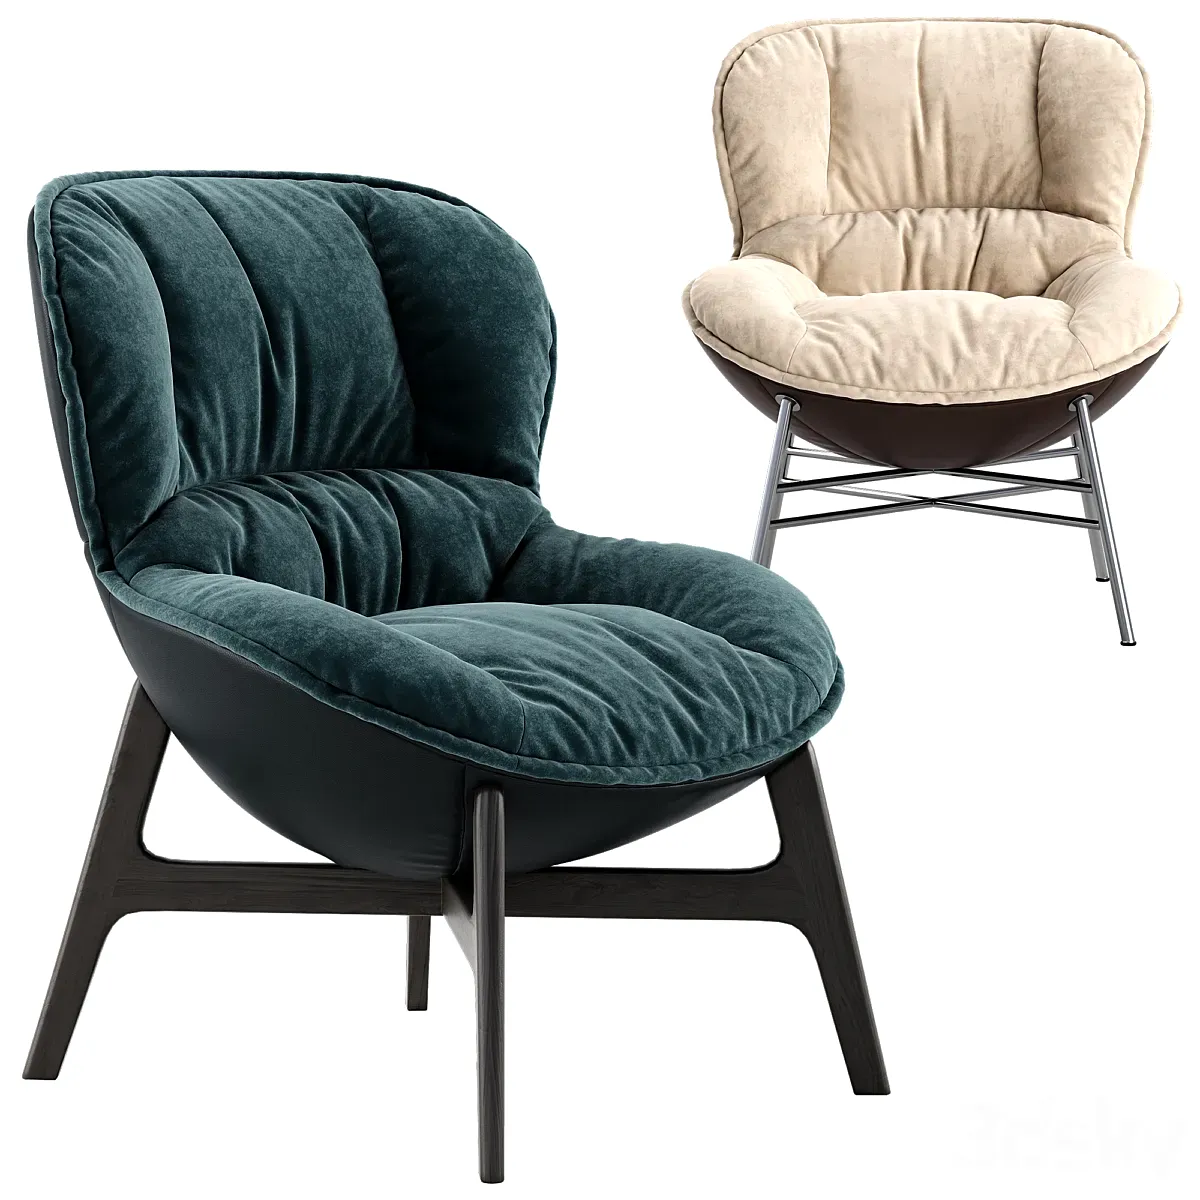 مدل سه بعدی صندلی راحتی تری دی مکس + ویری 3dsky - Ditre italia Softy armchair